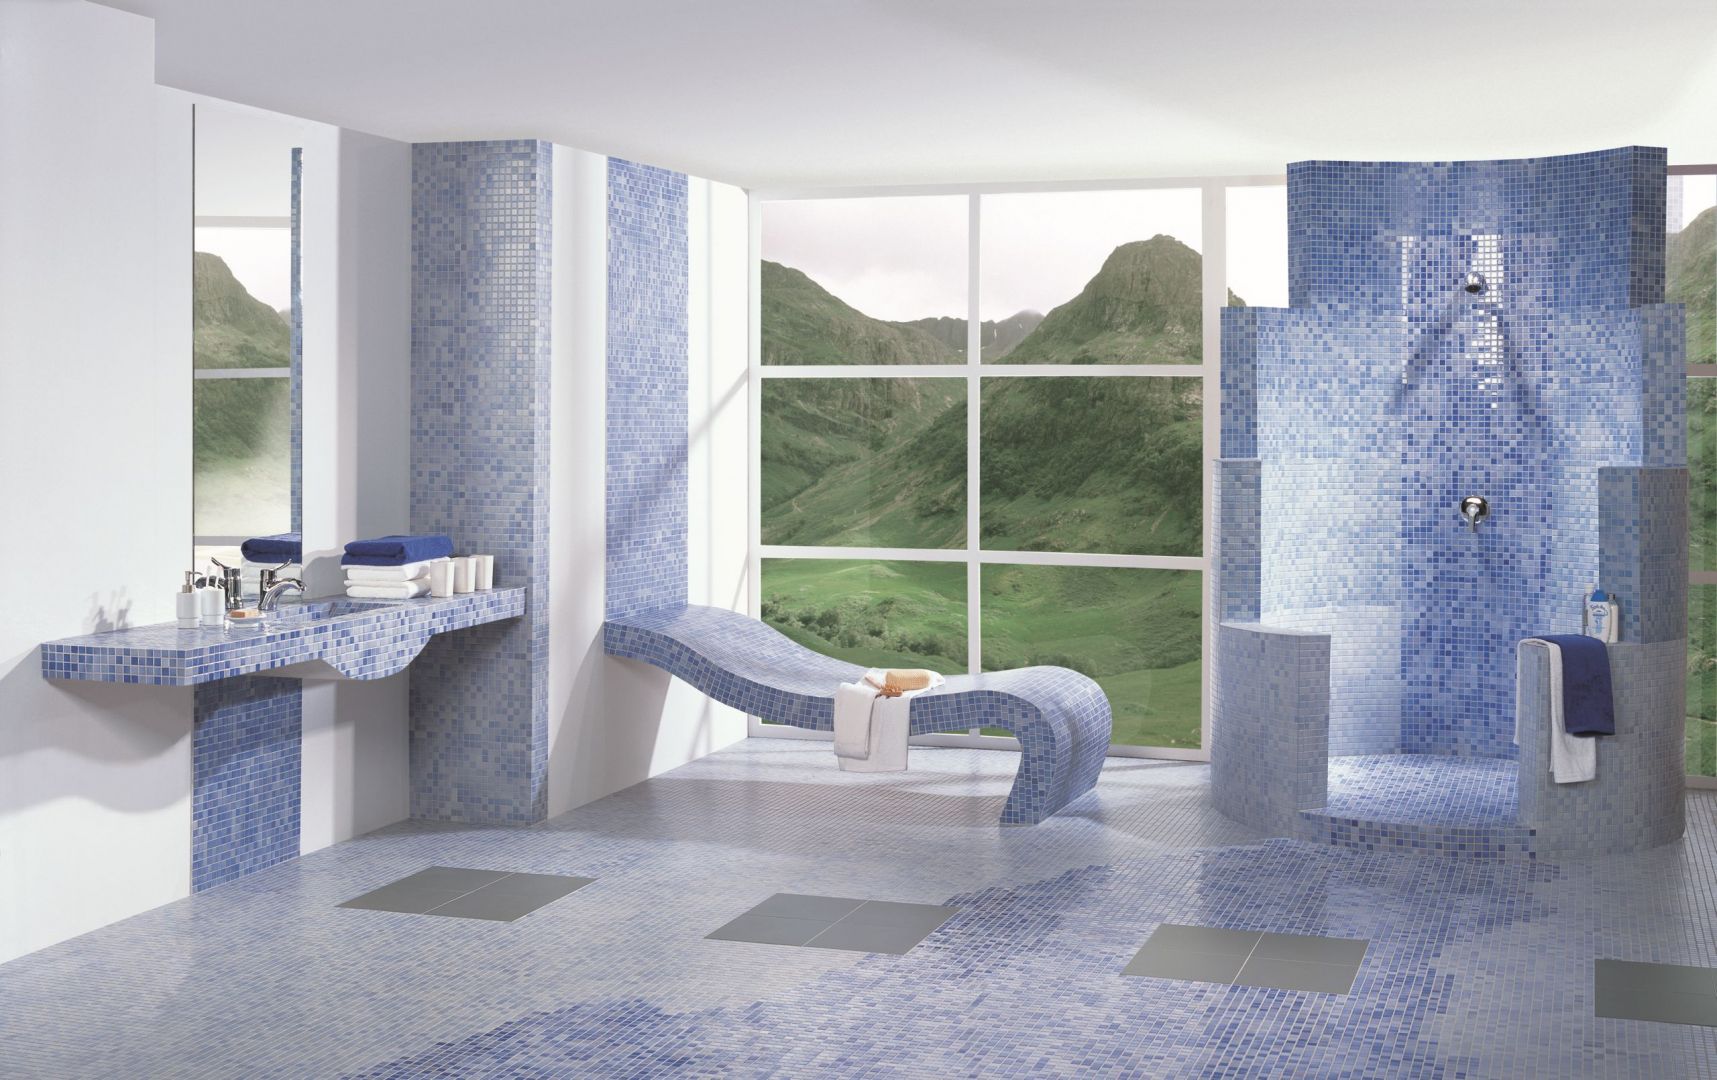 Estepona azul z oferty Ceramiki Paradyż to piękna mozaika w różnych odcieniach niebieskiego, sprawdzi się w łazience w morskim stylu. Fot. Ceramica Paradyż